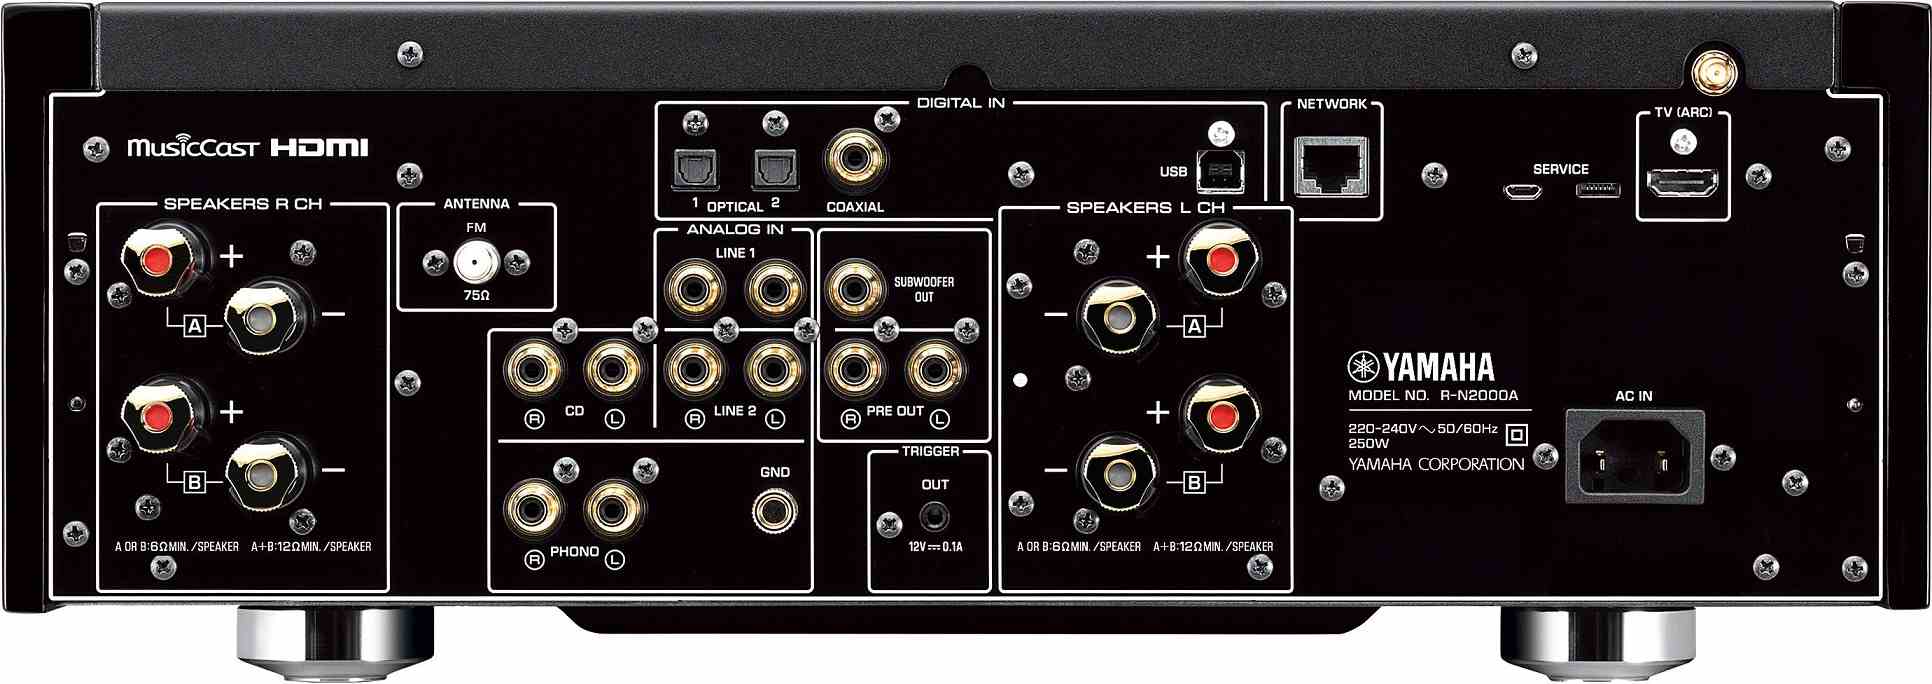 Yamaha R-N2000A zwart - achterkant - Stereo receiver